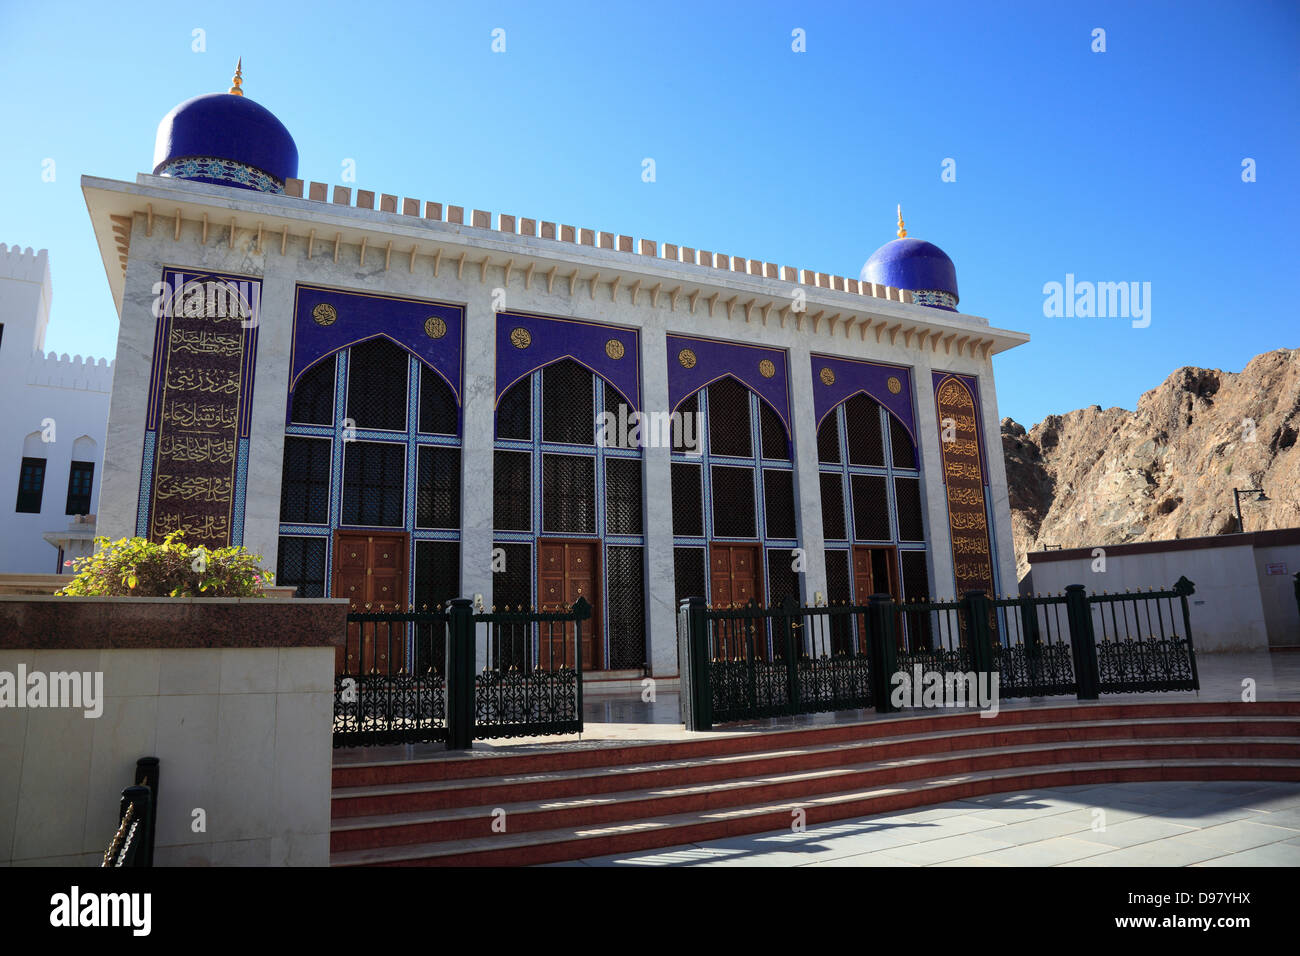 Mosque Masjid al-Khor, Muscat, Oman Stock Photo